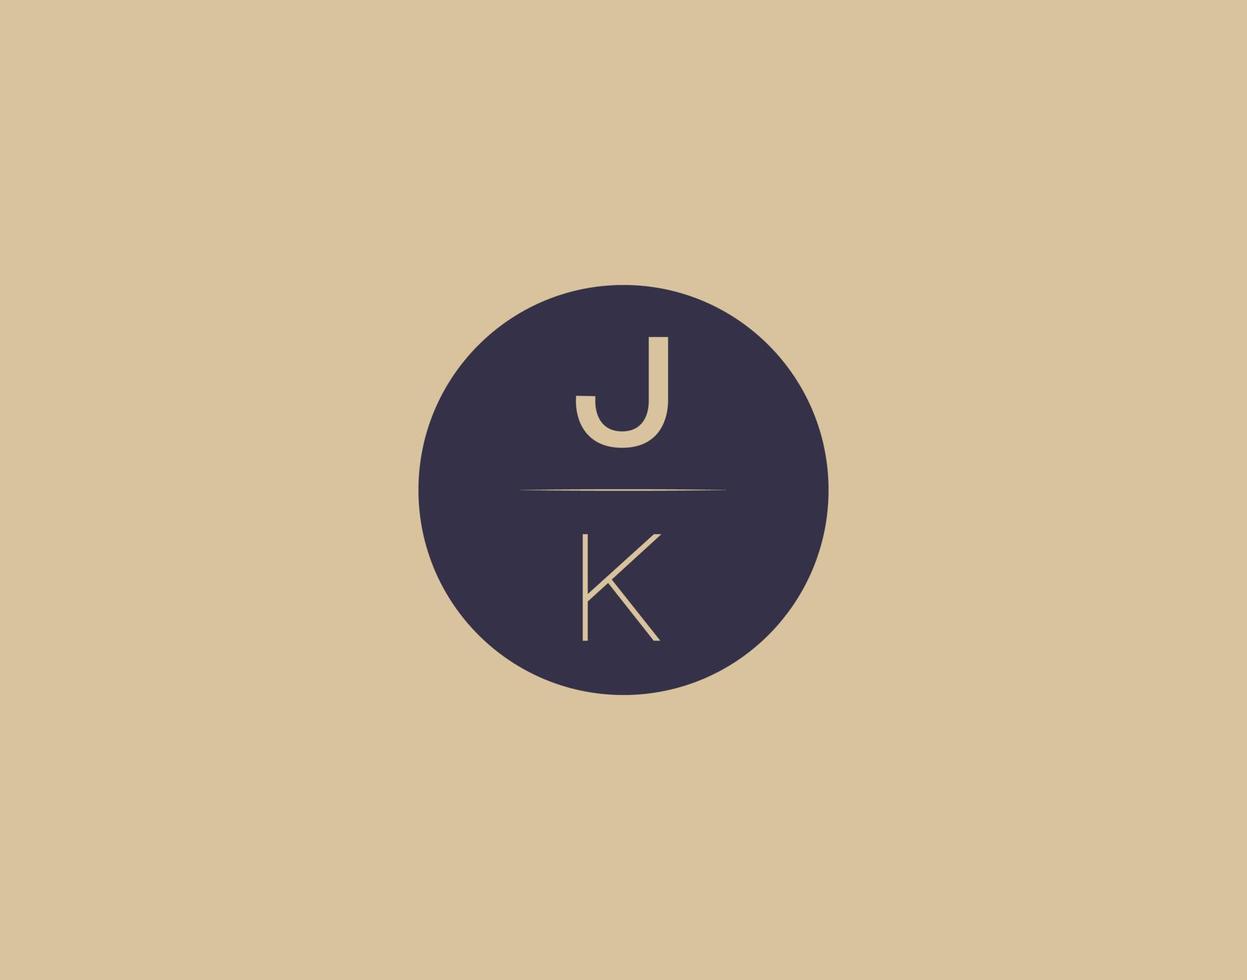 imagens vetoriais de design de logotipo moderno e elegante da carta jk vetor